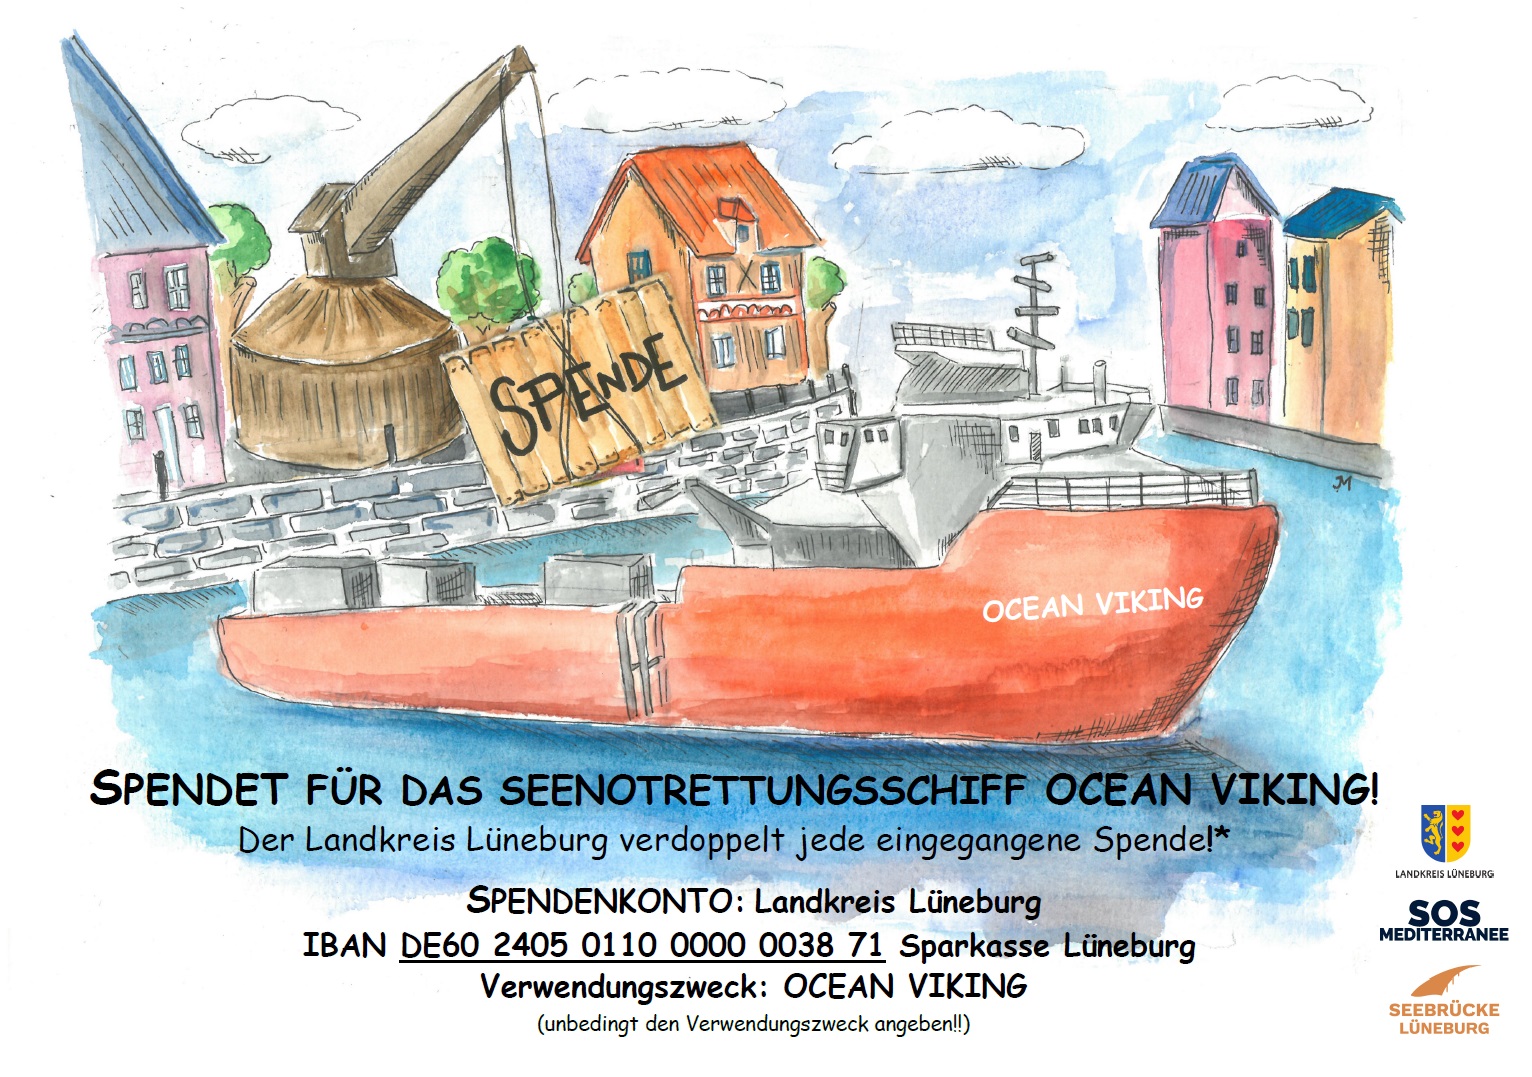 Spende Für die Ocean Viking; der Landkreis Lüneburg verdoppelt jede Spende!